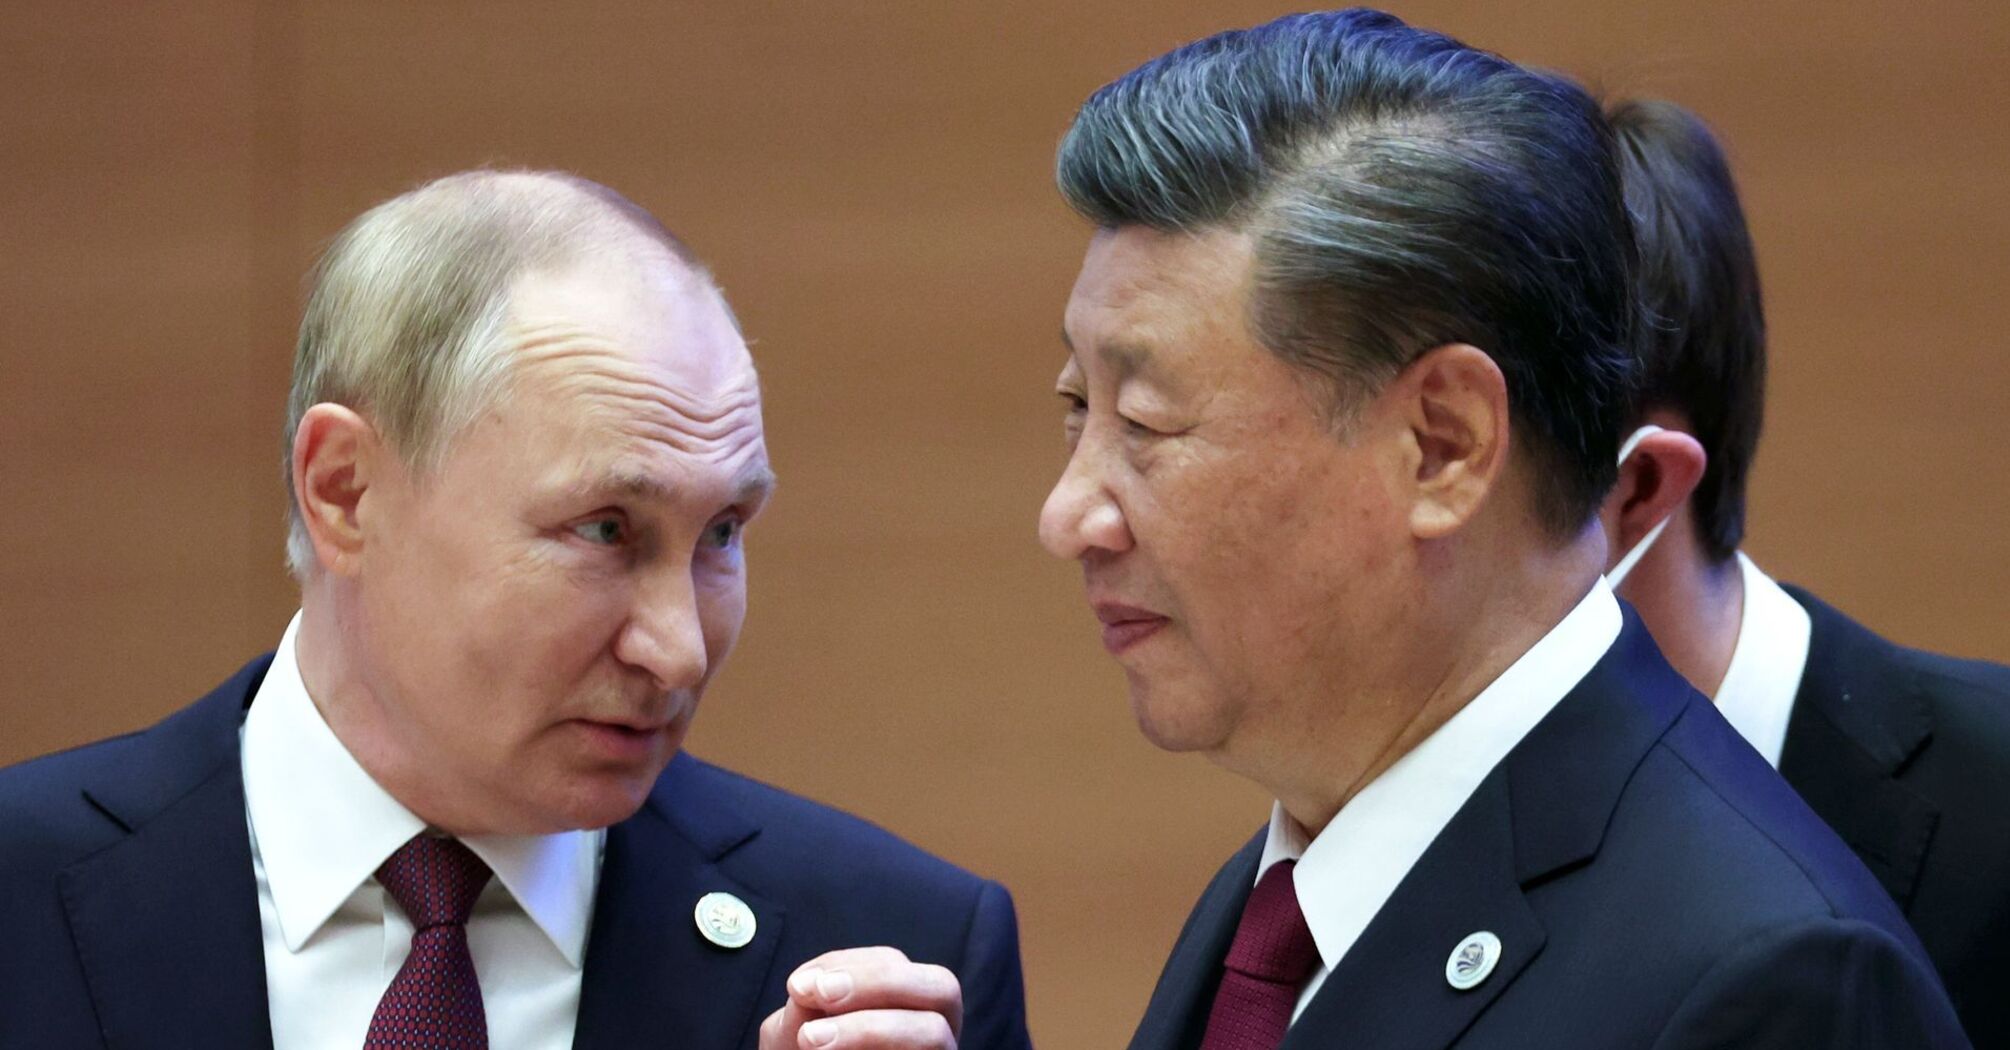 'Stanowisko Chin jest spójne': Xi Jinping wydał oświadczenie w sprawie wojny na Ukrainie na spotkaniu z Putinem